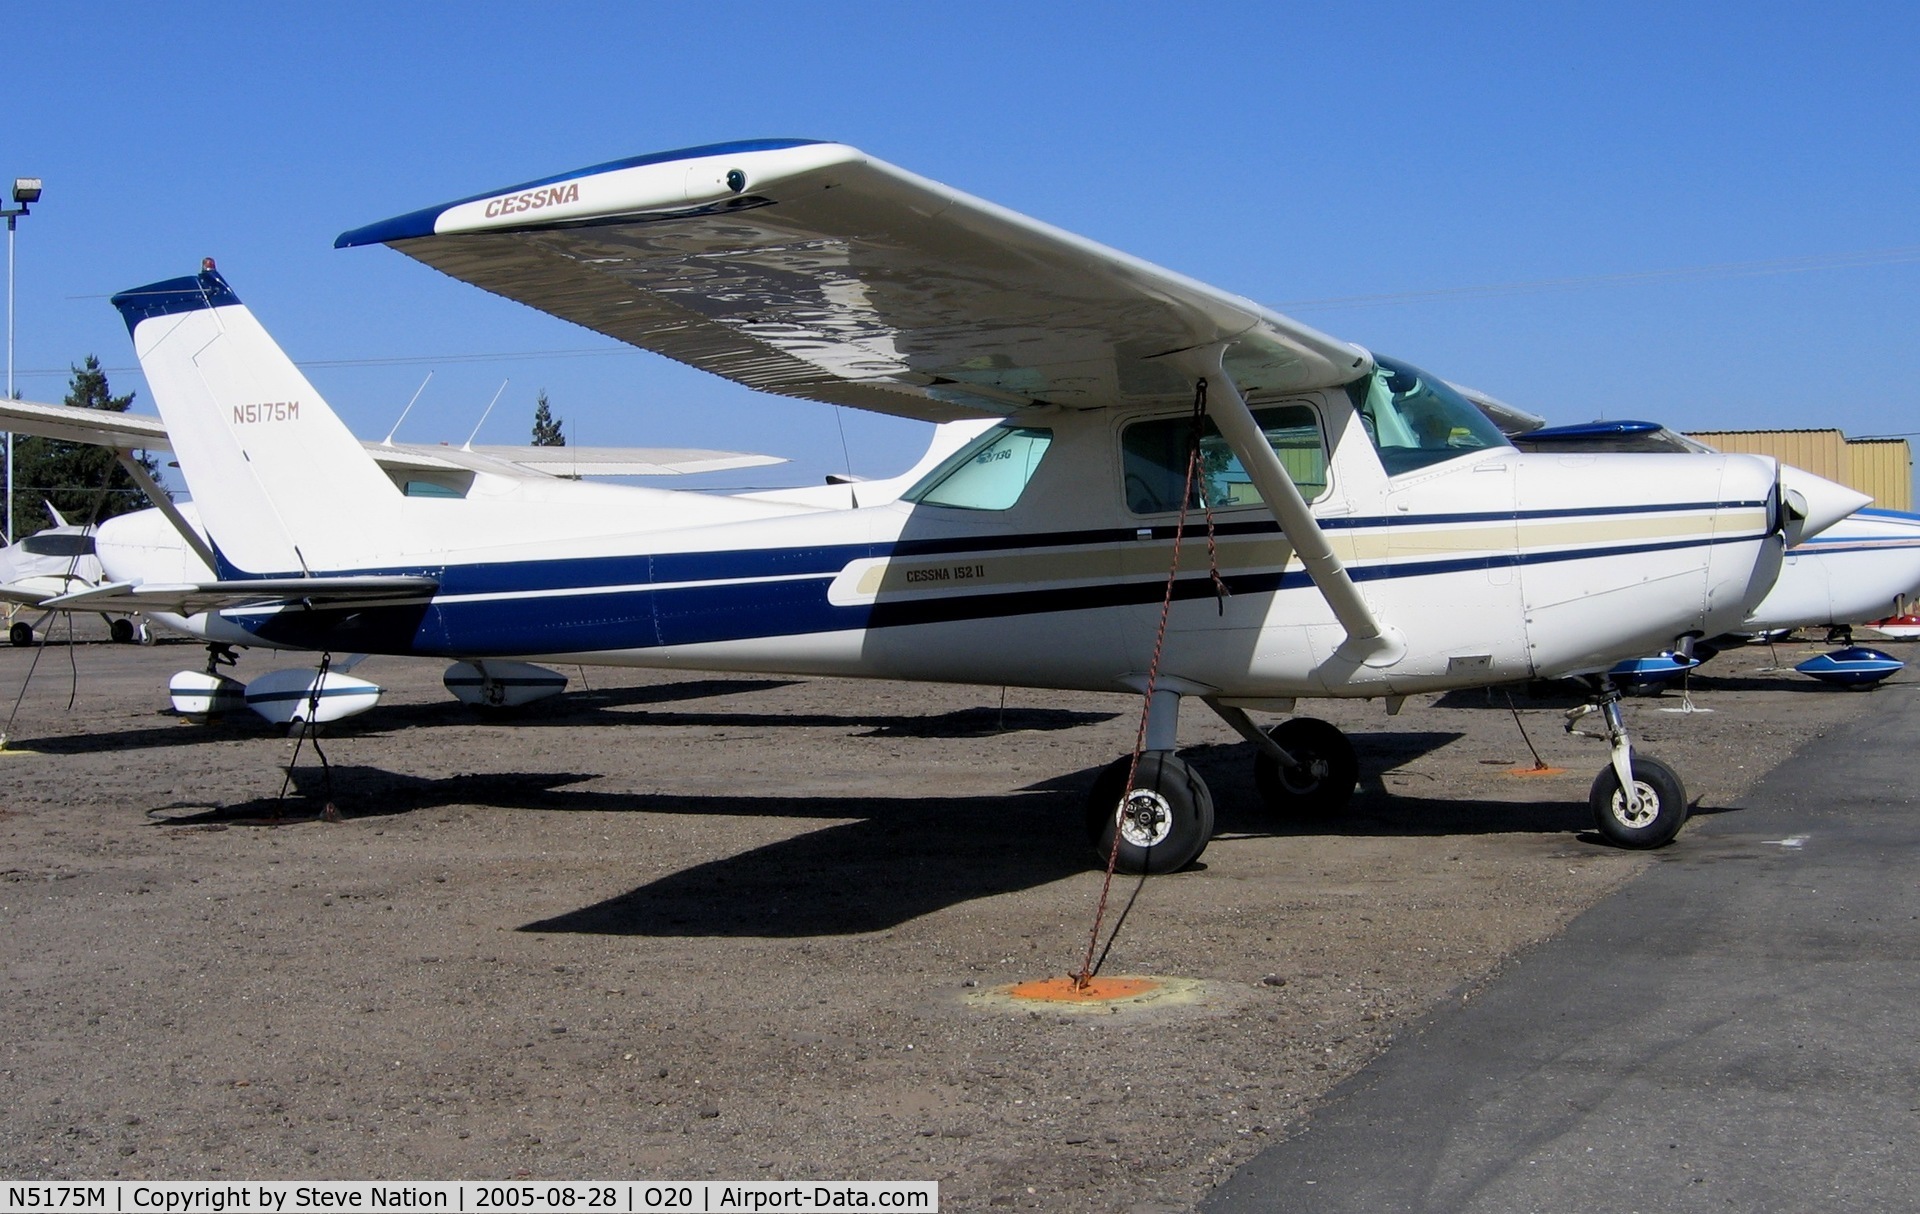 N5175M, 1980 Cessna 152 C/N 15284503, 1980 Cessna 152 @ Lodi-Kingdon Airport, CA